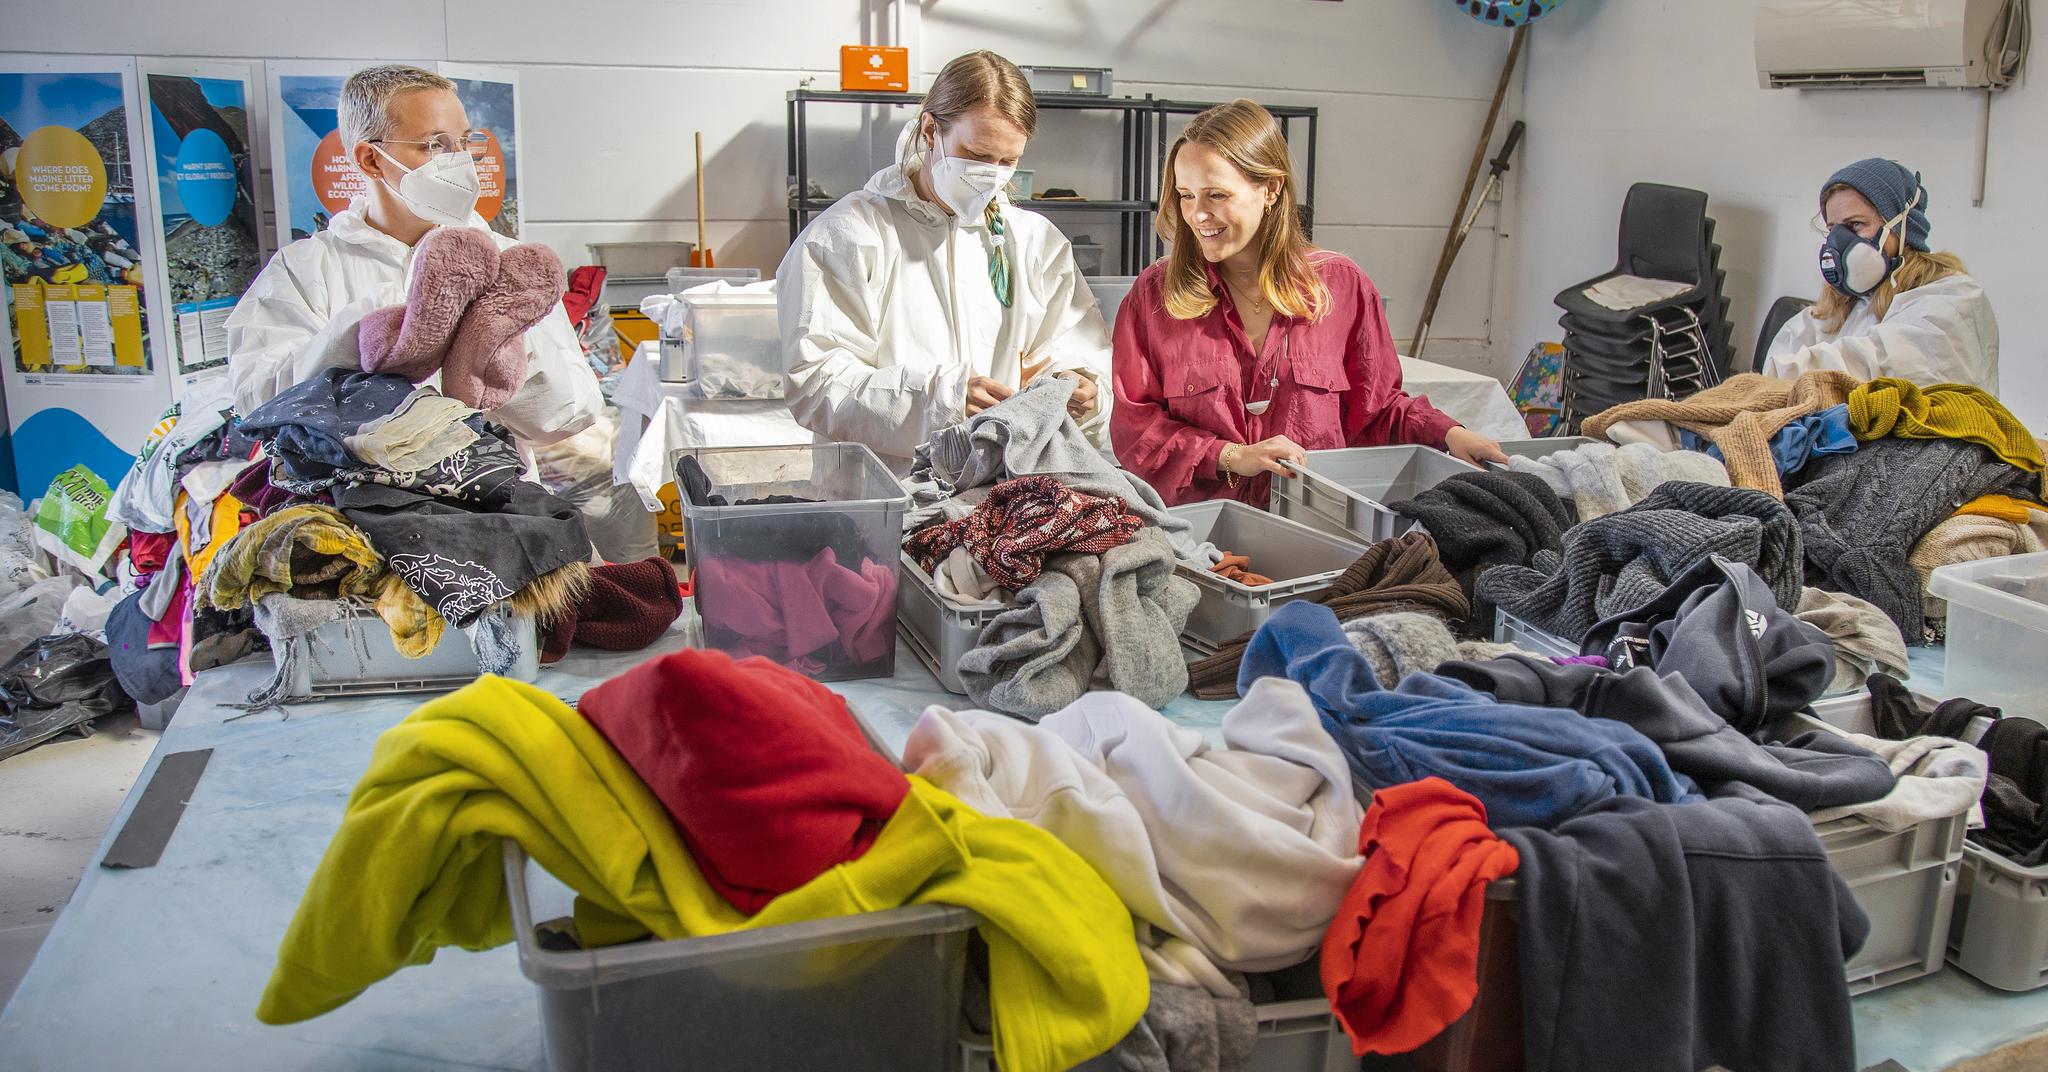 I et industribygg på Slemmestad får sy-om influenser Ingrid Vik Lysne og forskerne i prosjektet «Wasted Textiles» innsikt i hva nordmenn kaster.